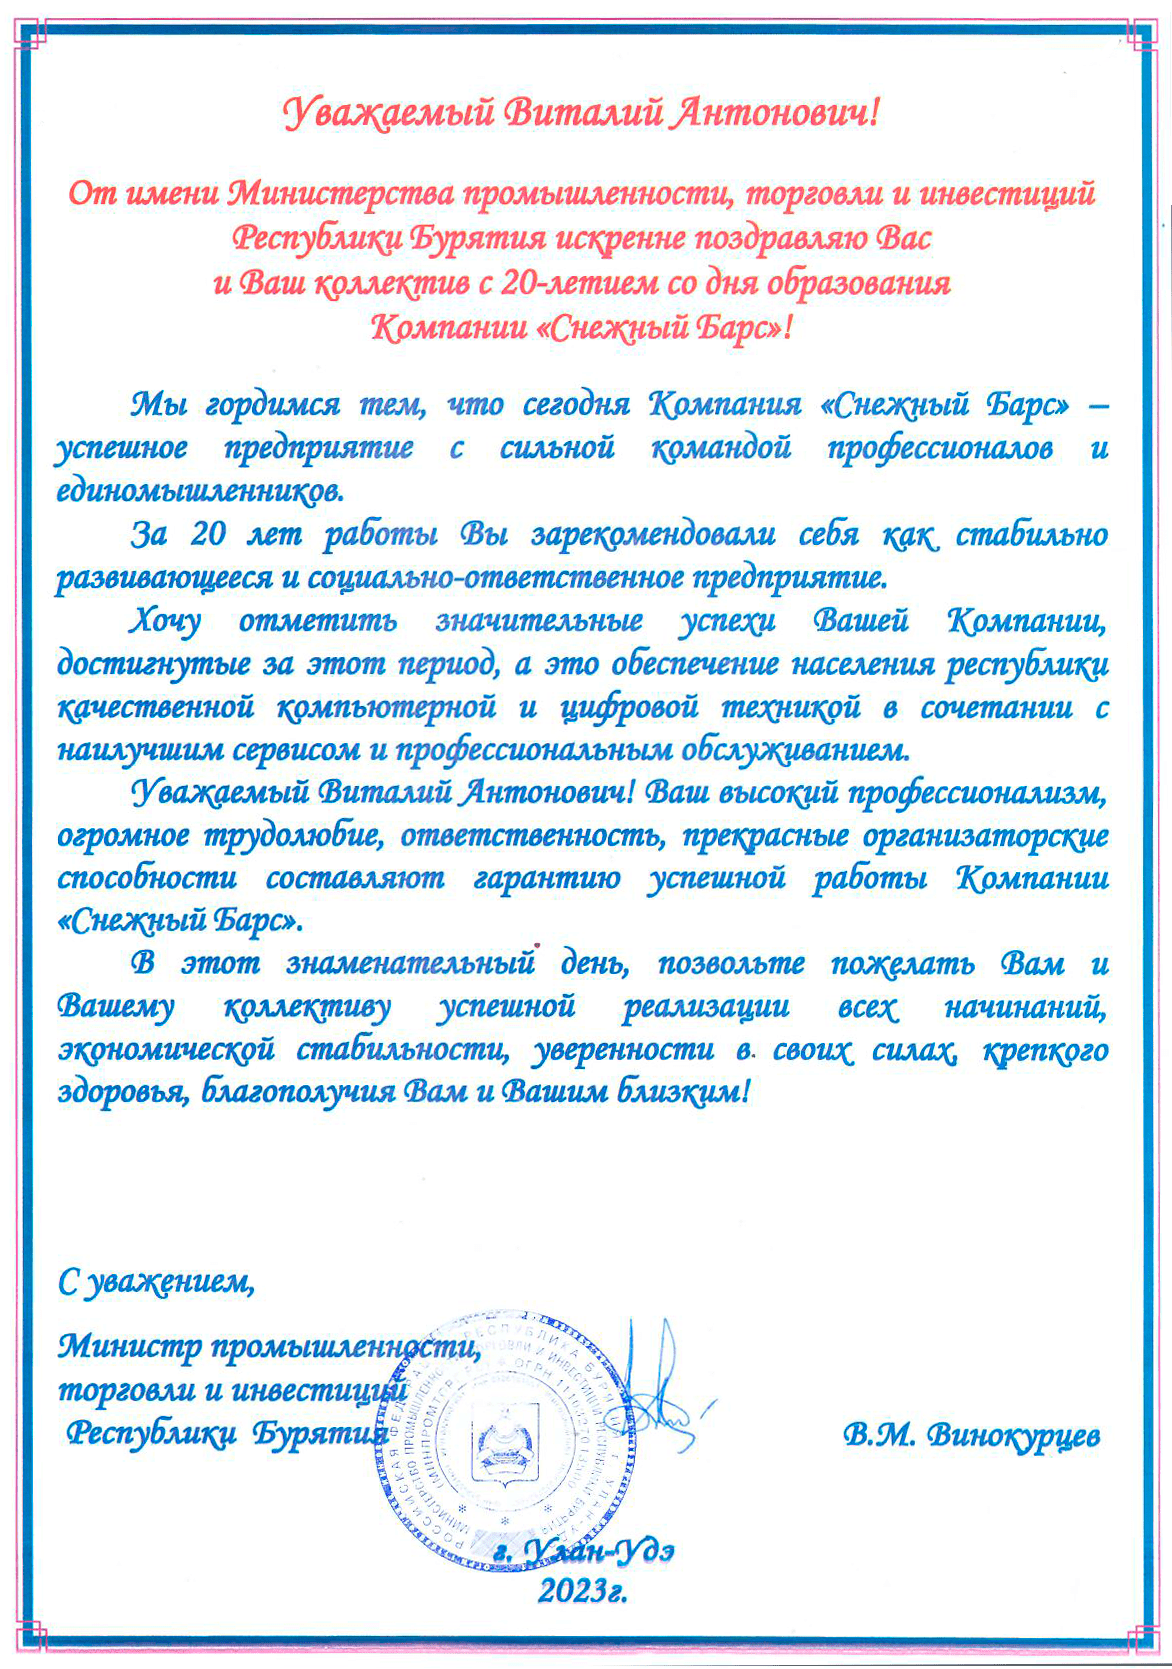 Поздравление с двадцатилетним юбилеем от Министерства промышленности, торговли и инвестиций Республики Бурятия